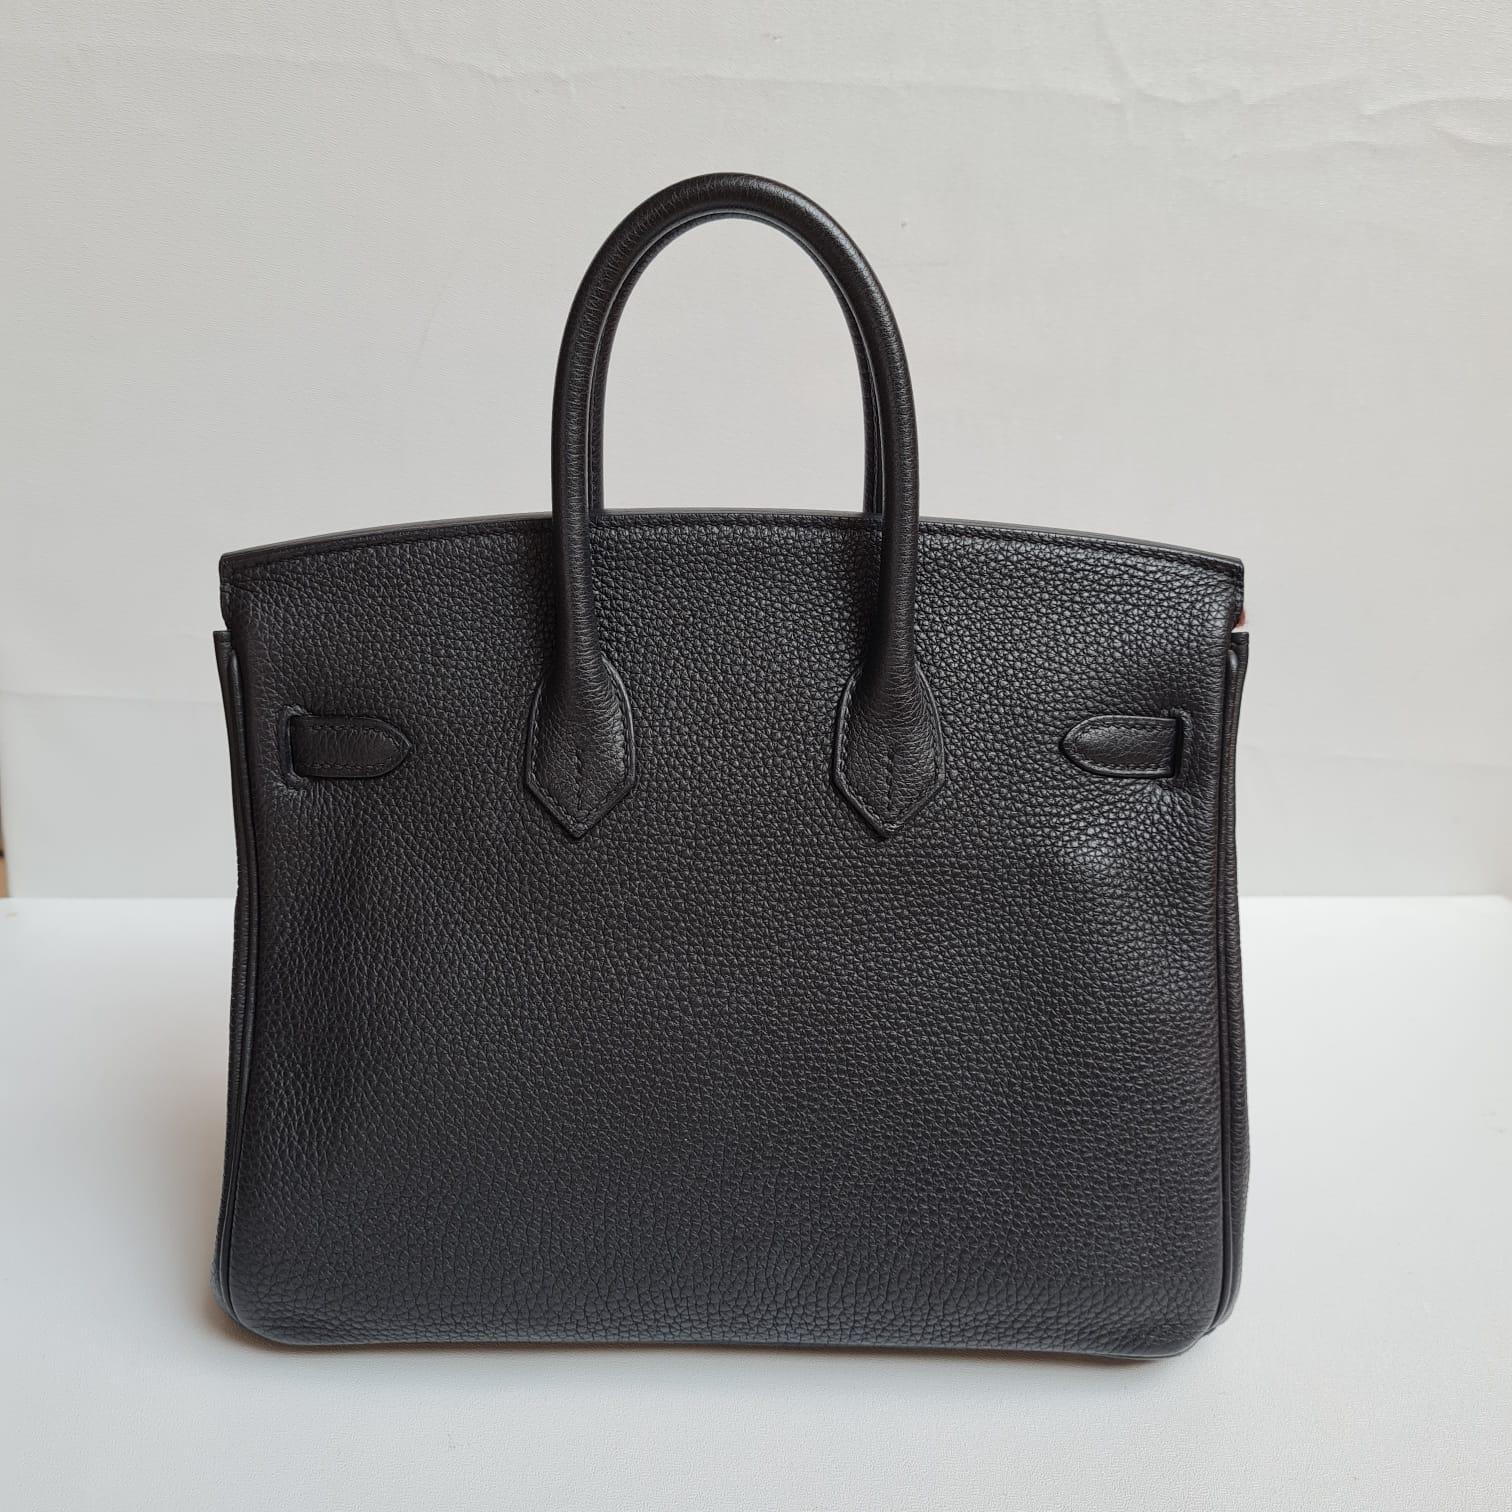 Hermes Birkin 25 Togo Black GHW Bag In Excellent Condition For Sale In Jakarta, Daerah Khusus Ibukota Jakarta